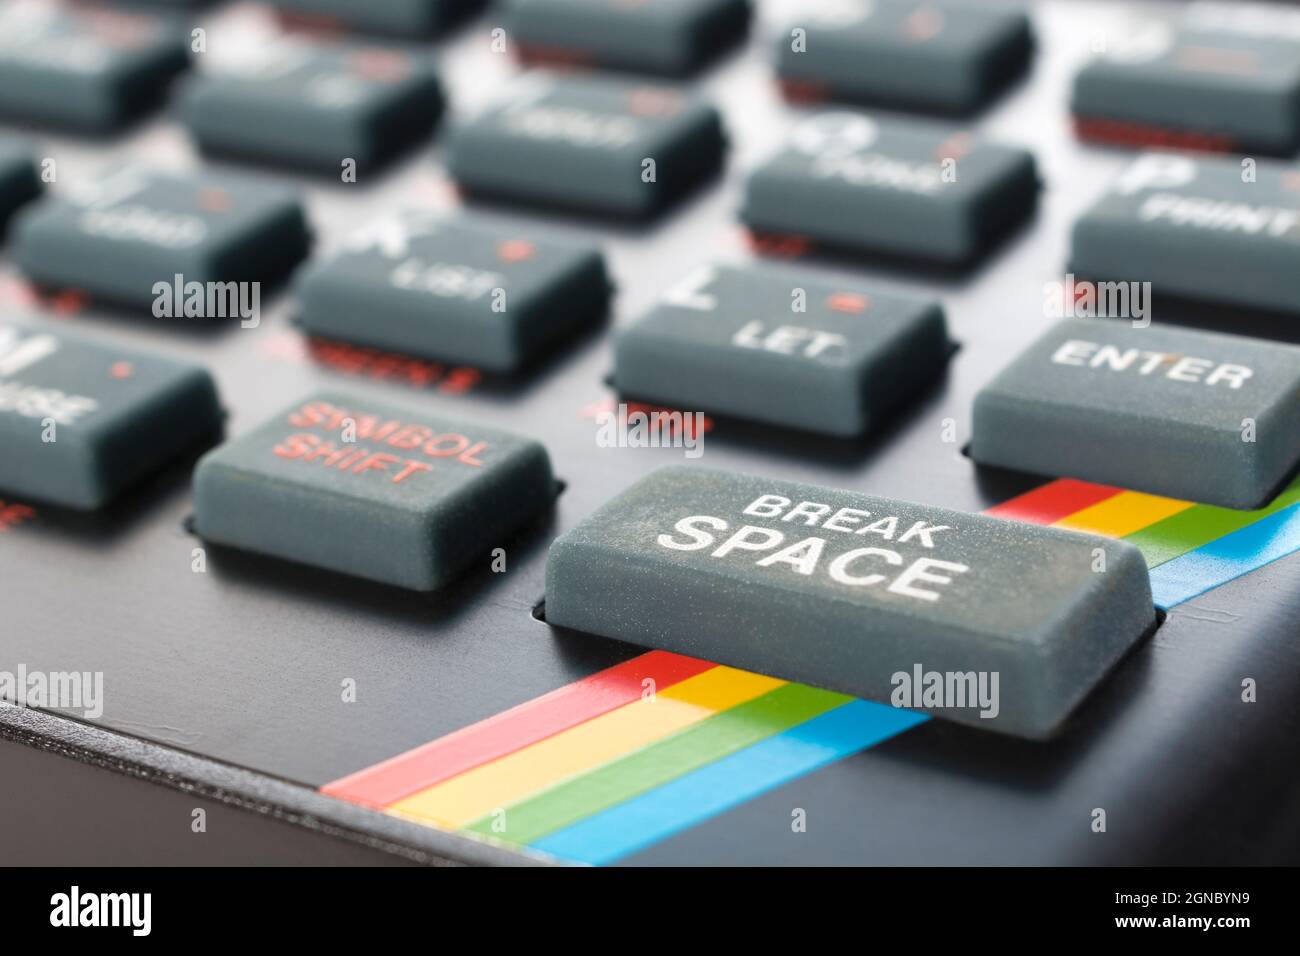 Primo piano della tastiera Sinclair ZX Spectrum. Tasto di comando di base con focalizzazione su 'Break' di Break Space. Computer domestico vintage a 8 bit degli anni '80 (vedere le note). Foto Stock